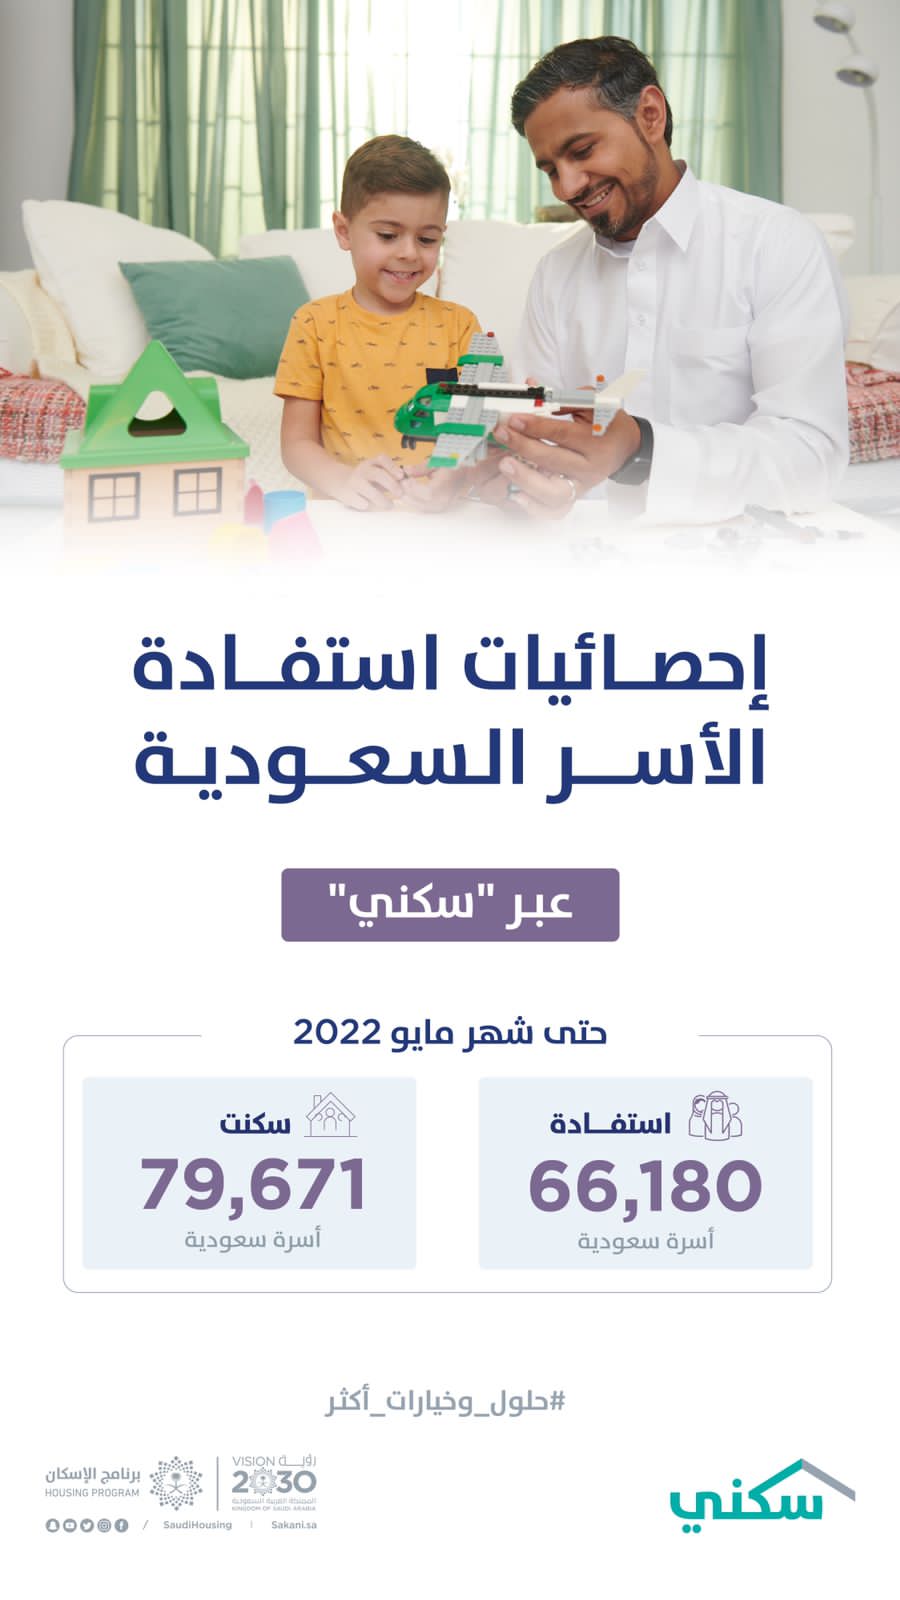 “سكني” يعلن استفادة أكثر من 66 ألف أسرة من خياراته السكنية 